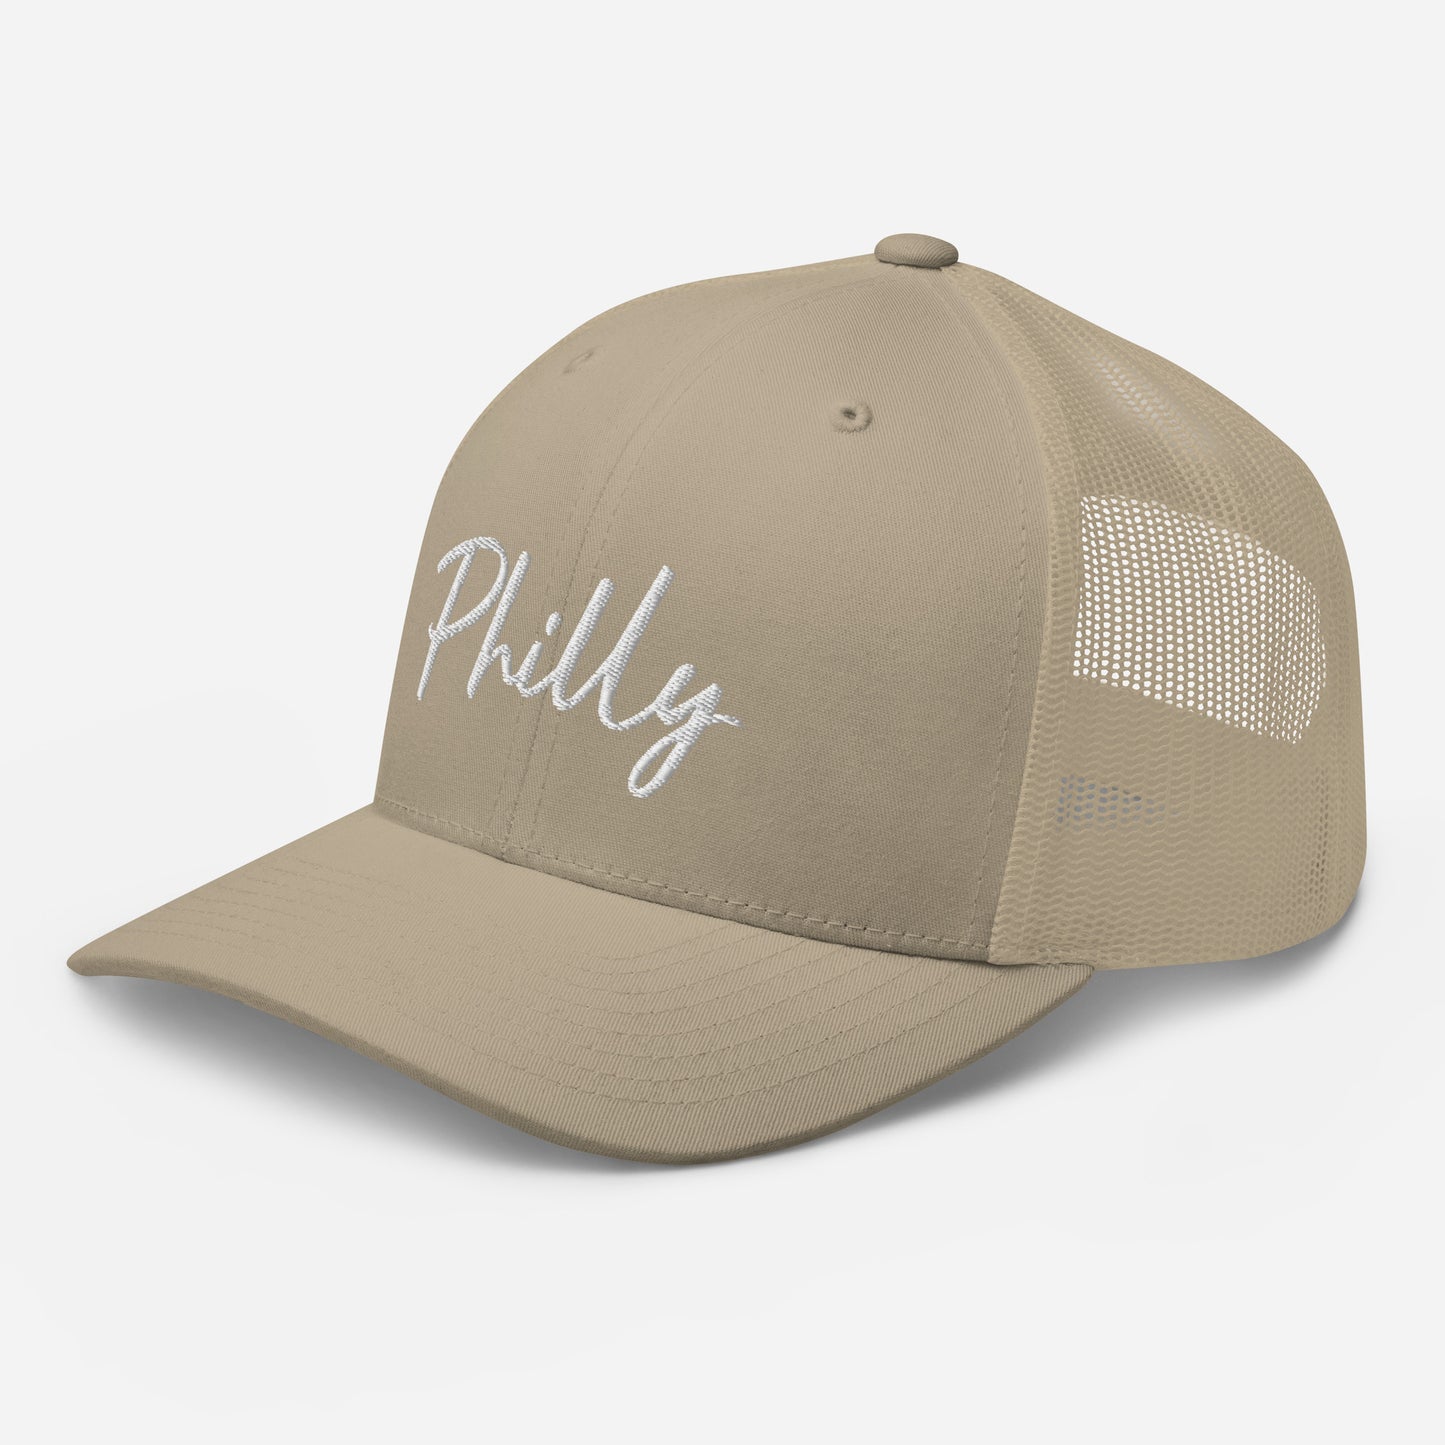 Philly Trucker Cap